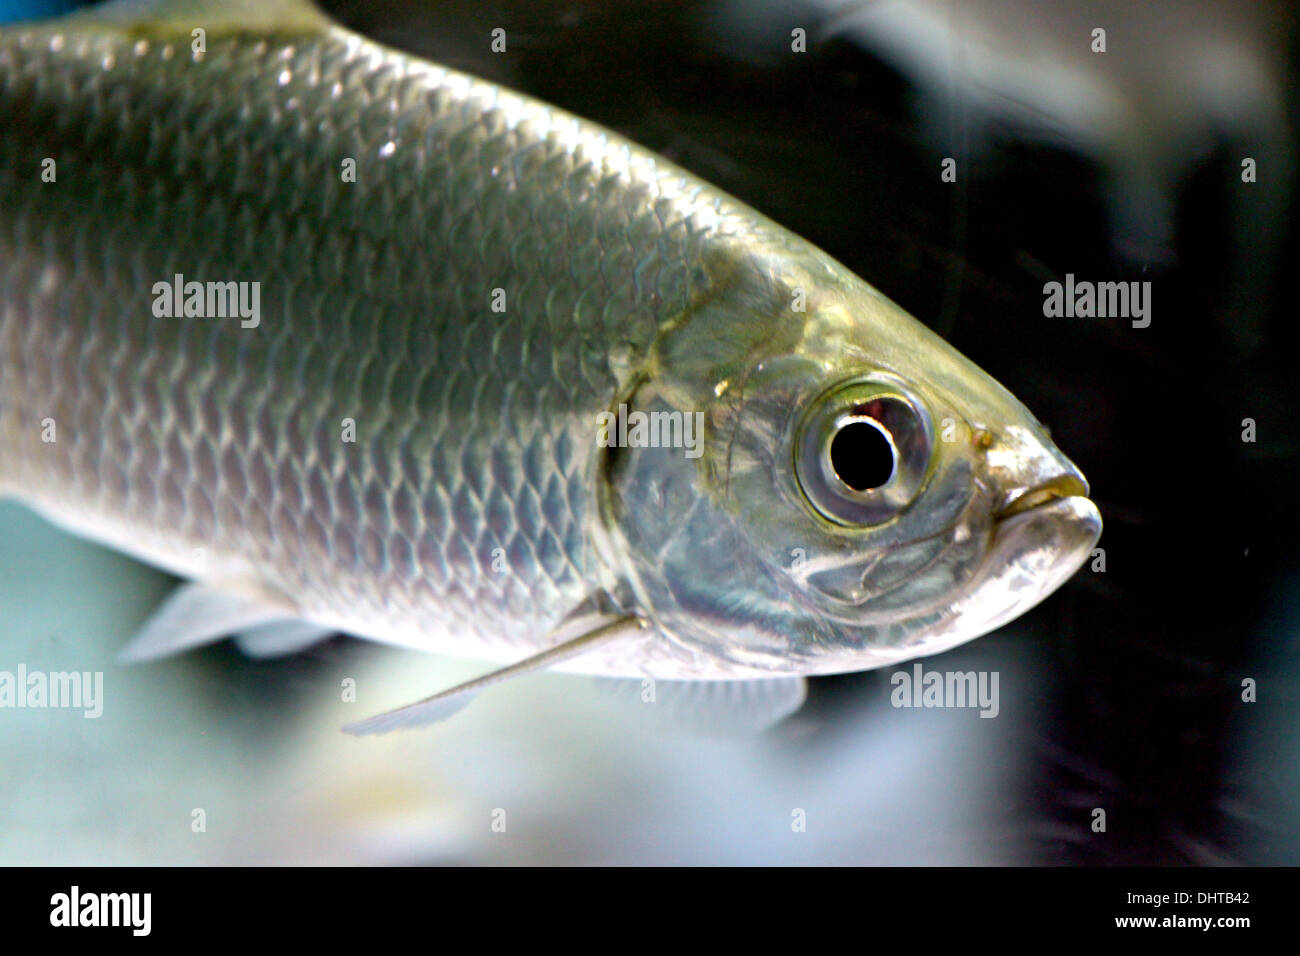 The Picture Focus Atlantic tarpon in Aquarium Fish. Stock Photo